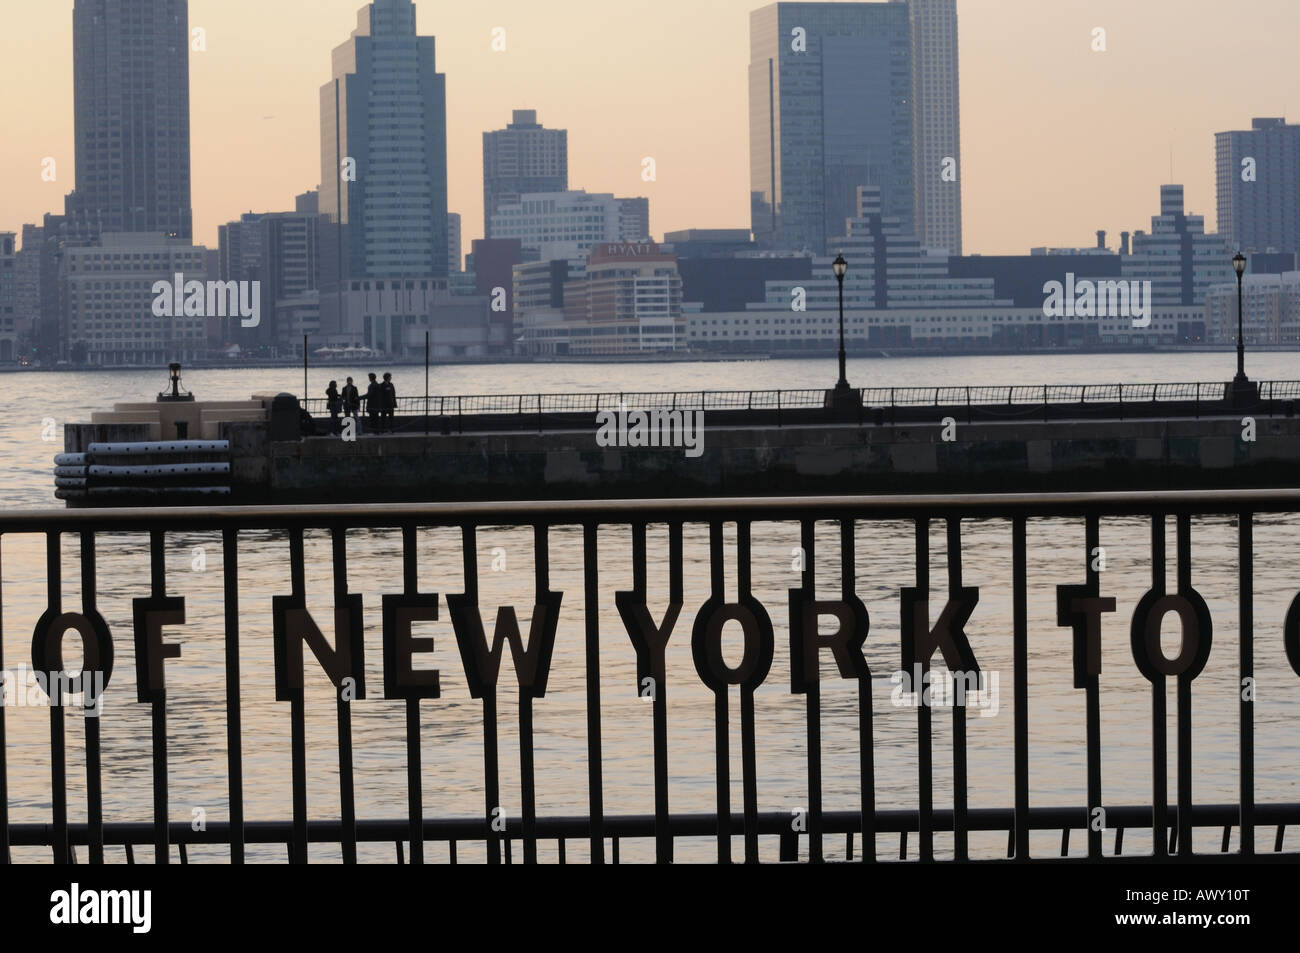 Le linee da un Walt Whitman poesia che descrive la città di New York sono state collocate su una ringhiera in Battery Park City. Foto Stock